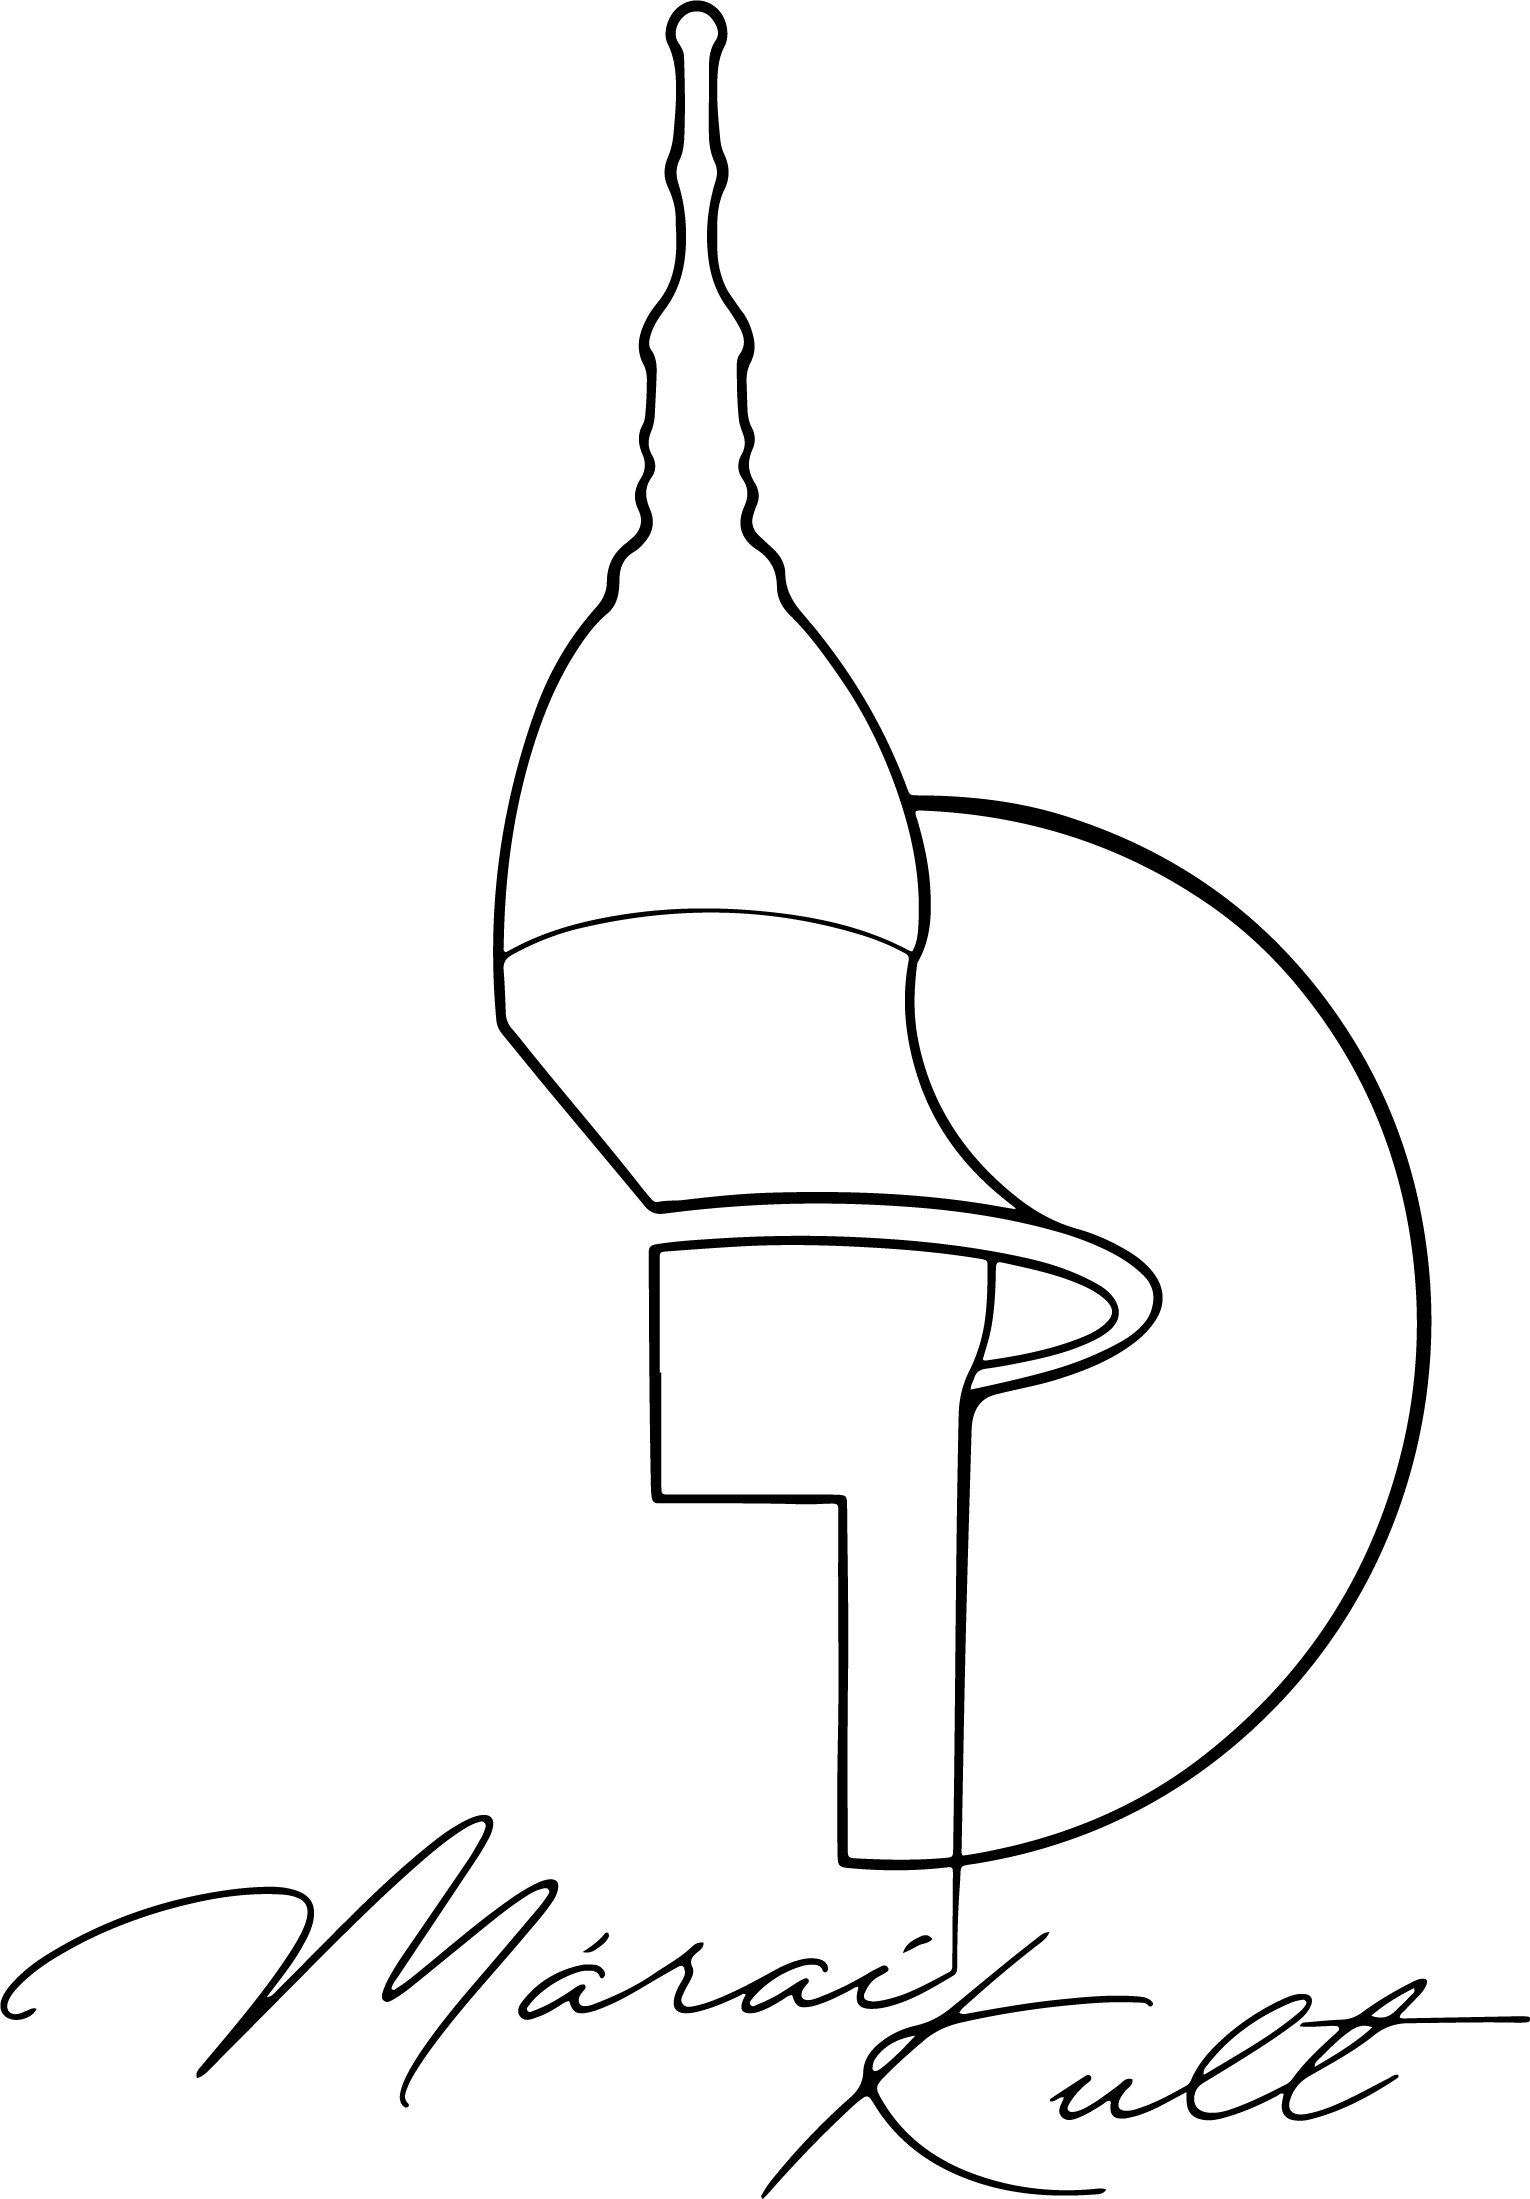 MáraiKult logo